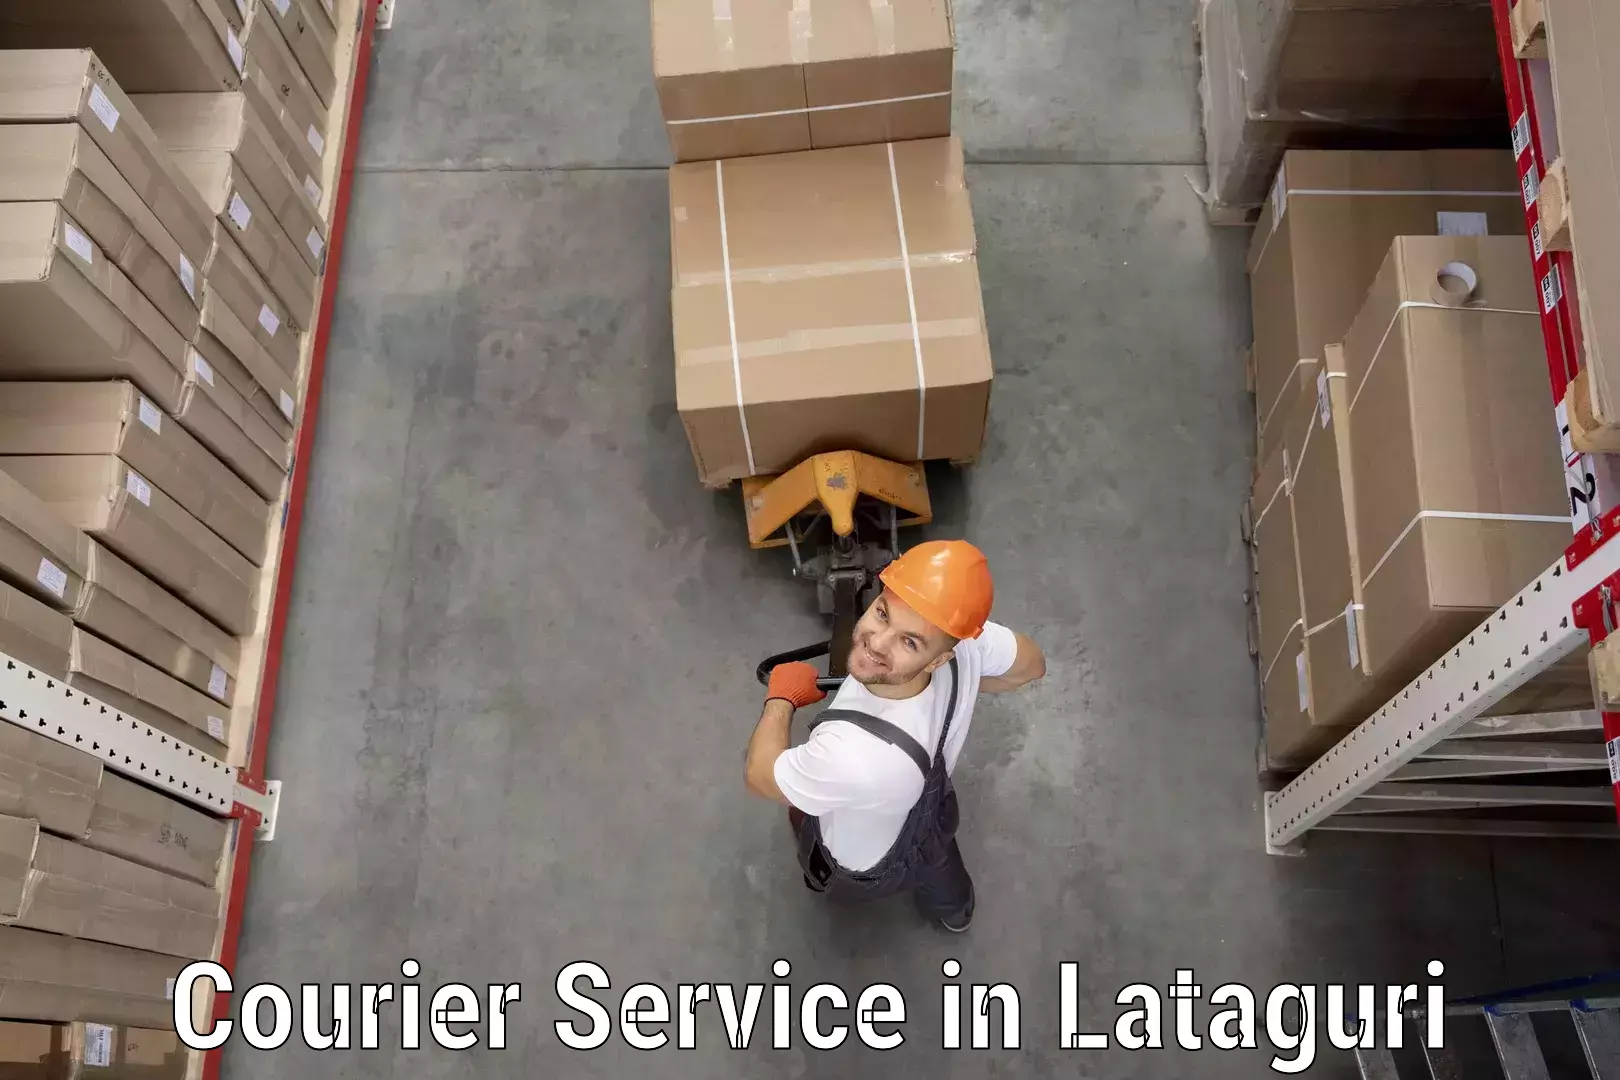 Customer-centric shipping in Lataguri